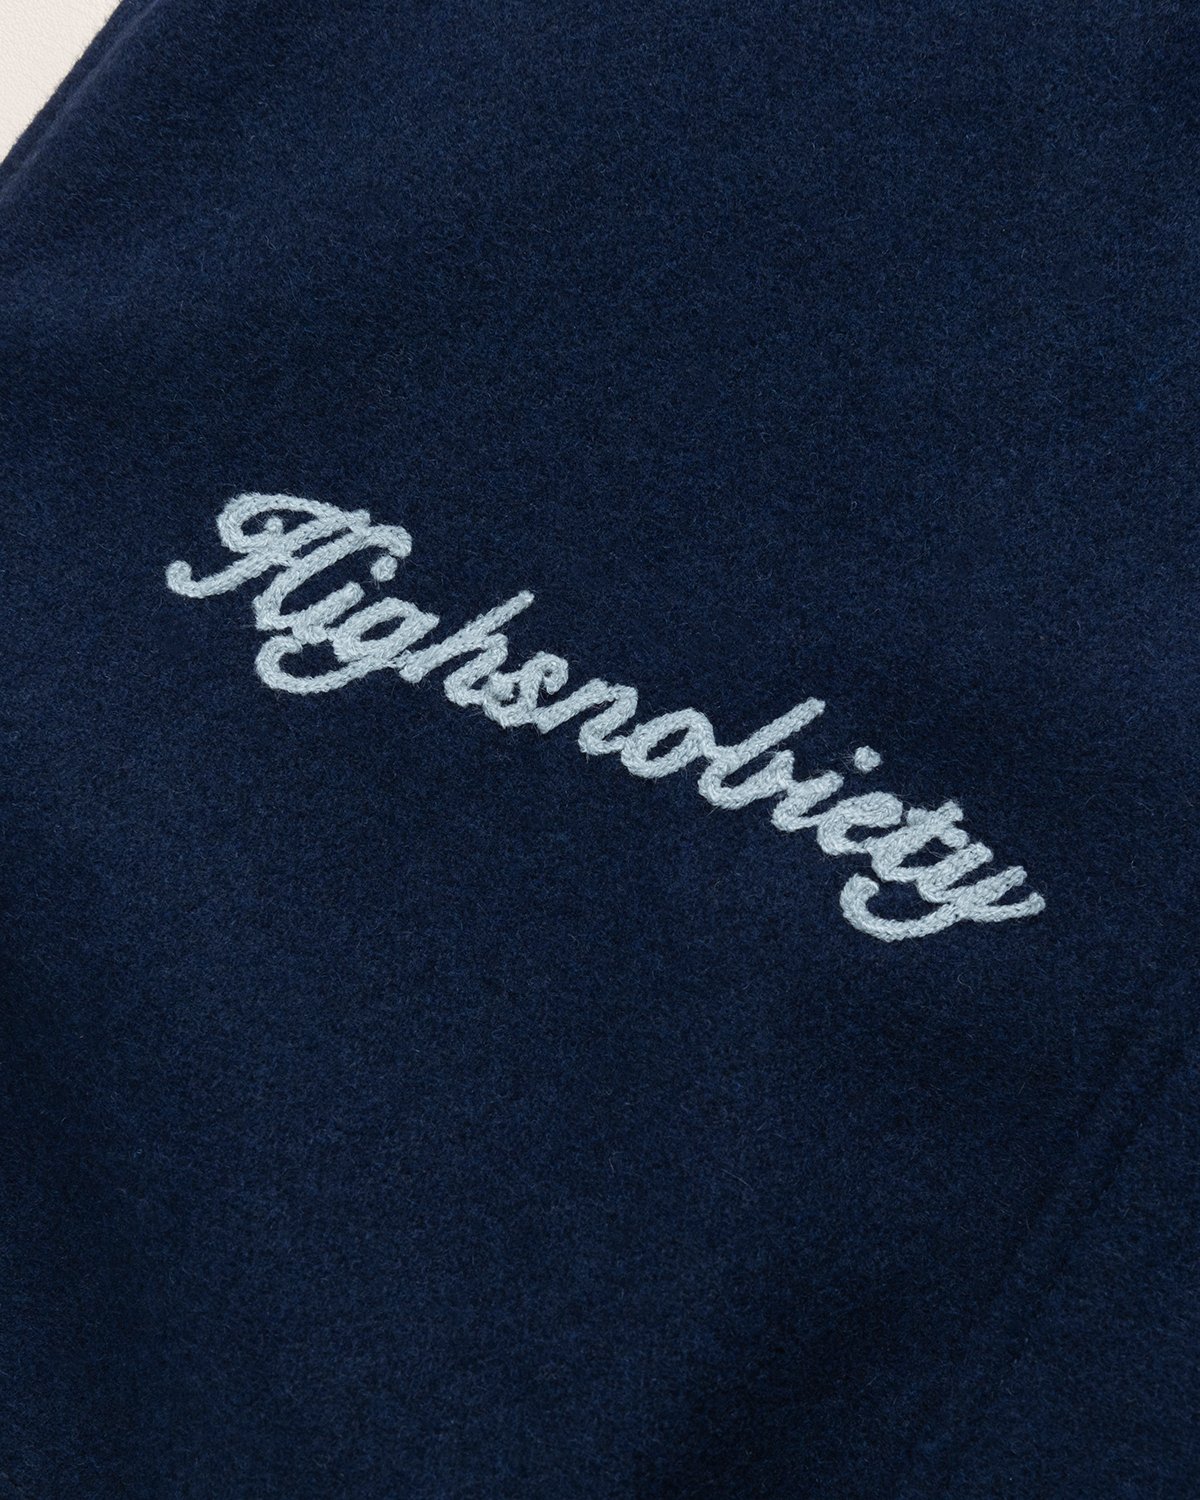 Jacob & Co. x Highsnobiety - Logo Varsity Jacket Navy Creme - Clothing - Blue - Image 4